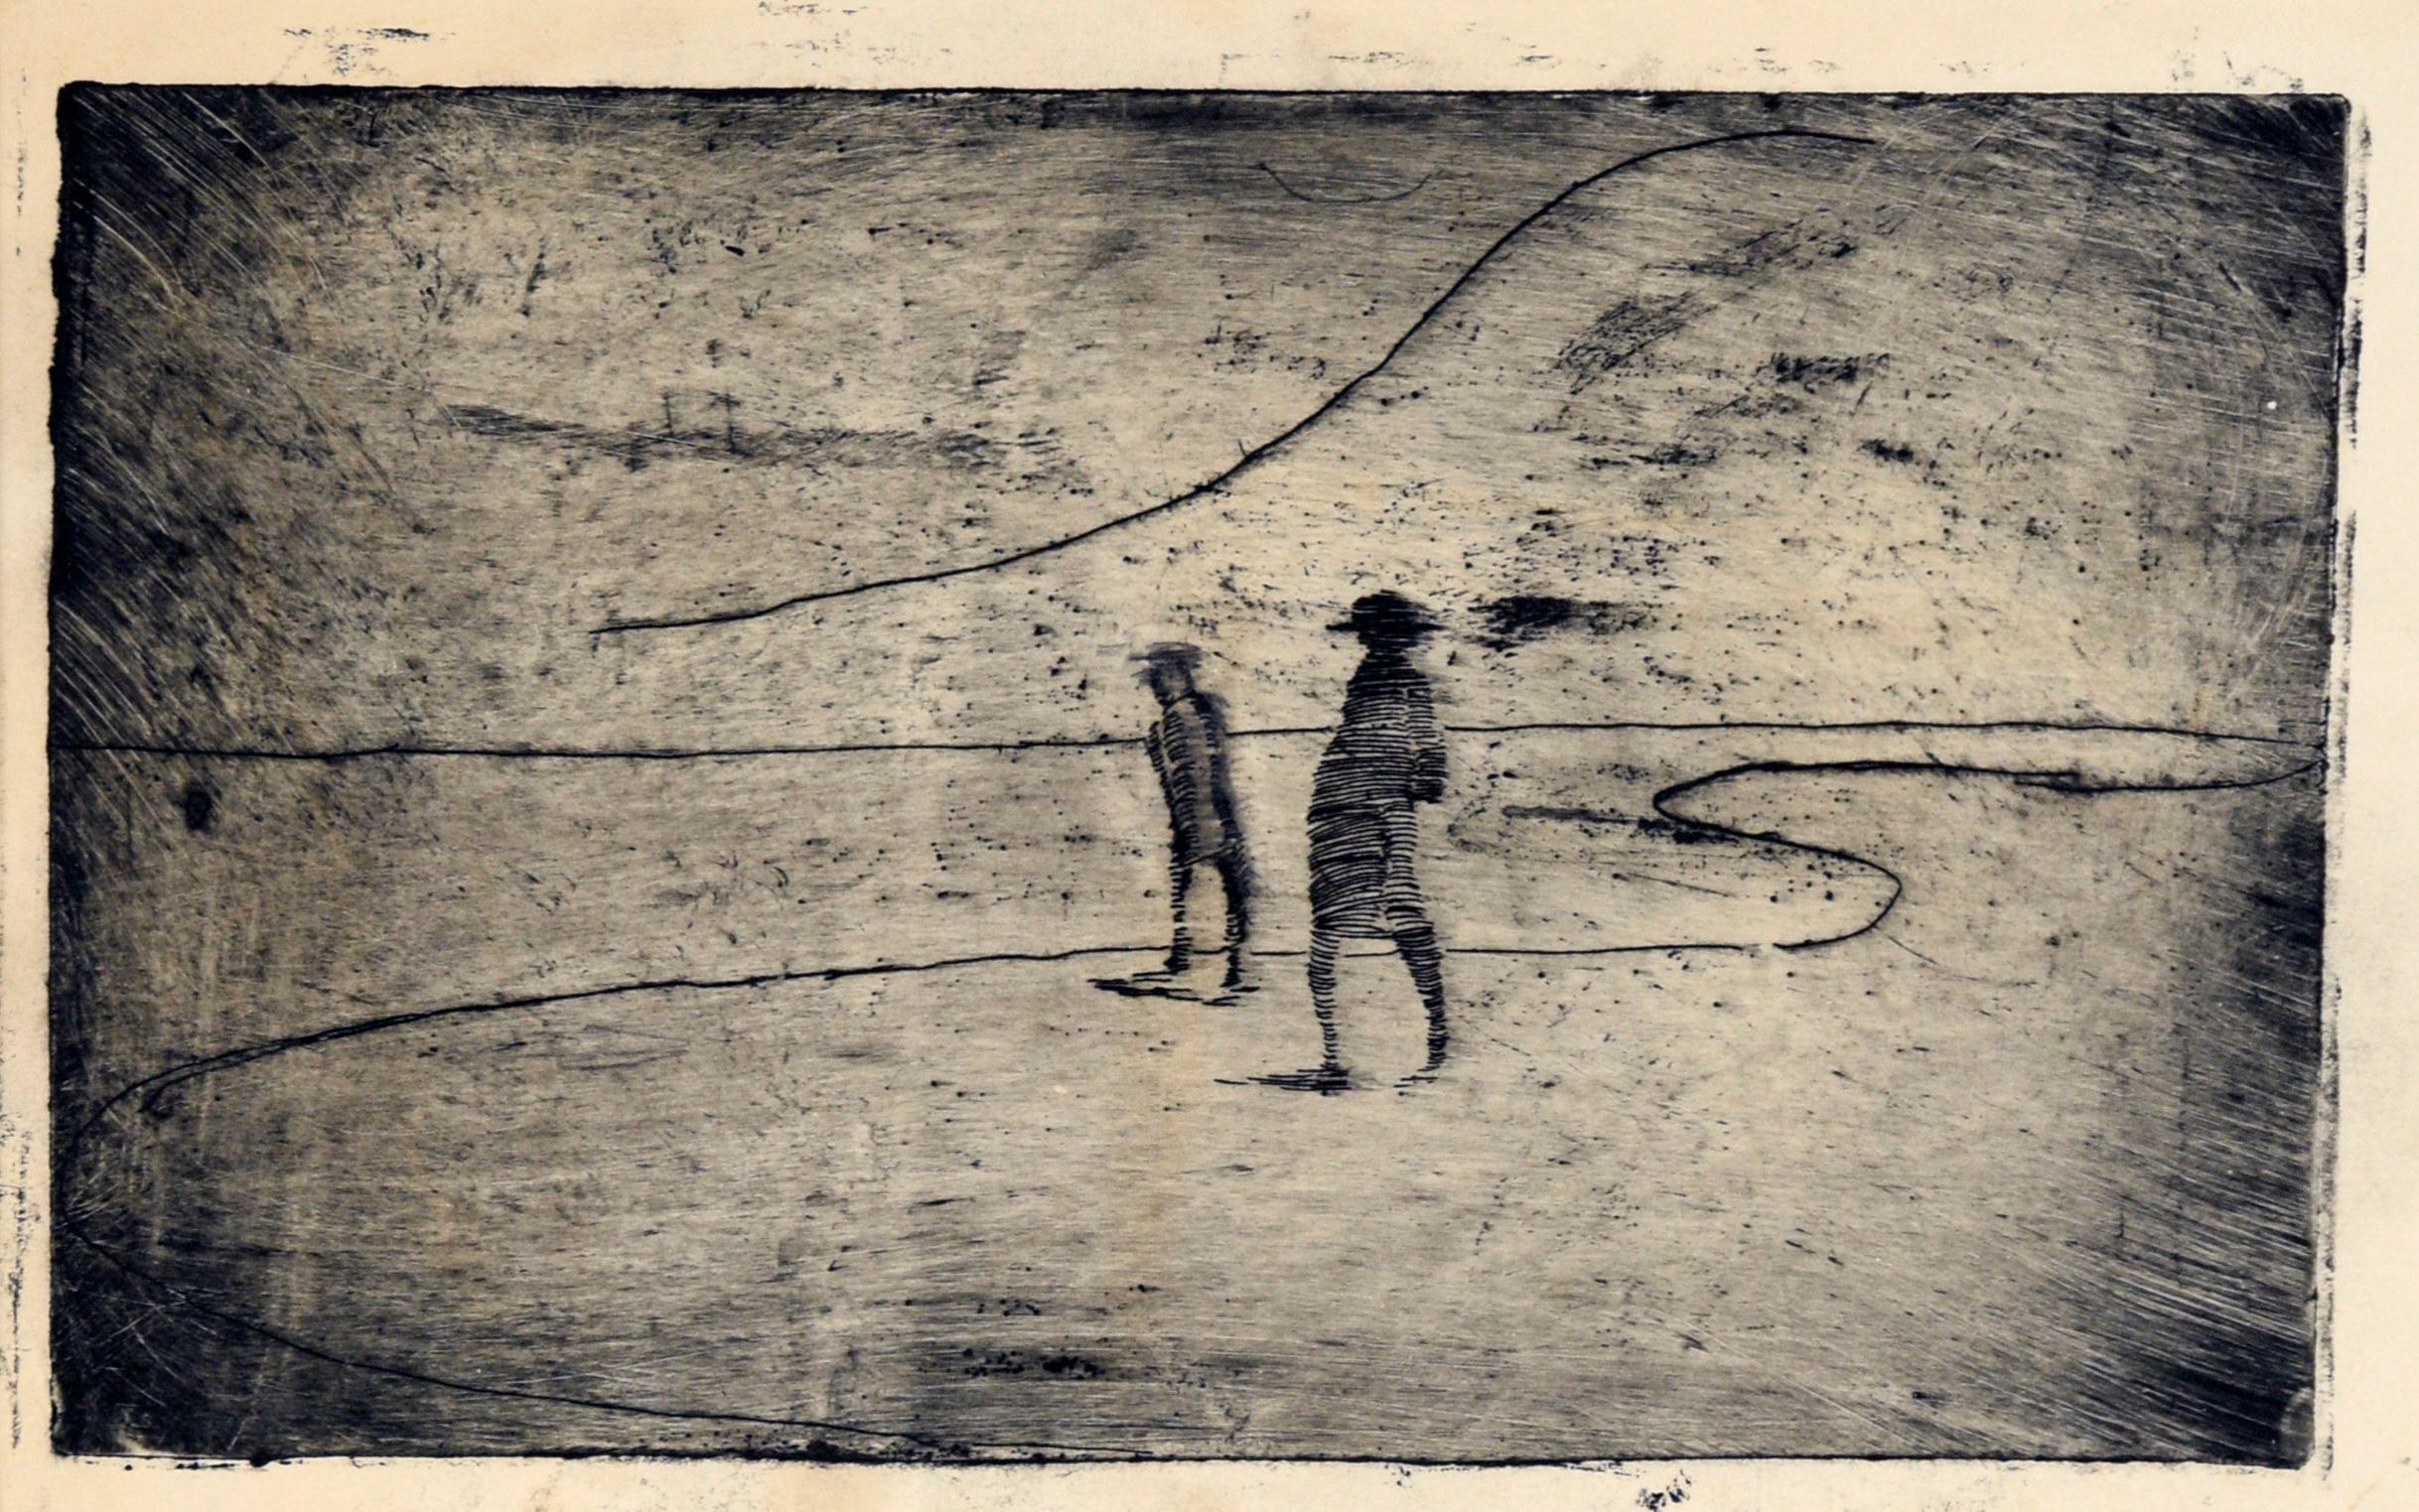 Minimalistische Landschaft mit zwei Figuren an der Shore – Kaltnadelradierung in Tinte auf Papier – Print von Doris Warner